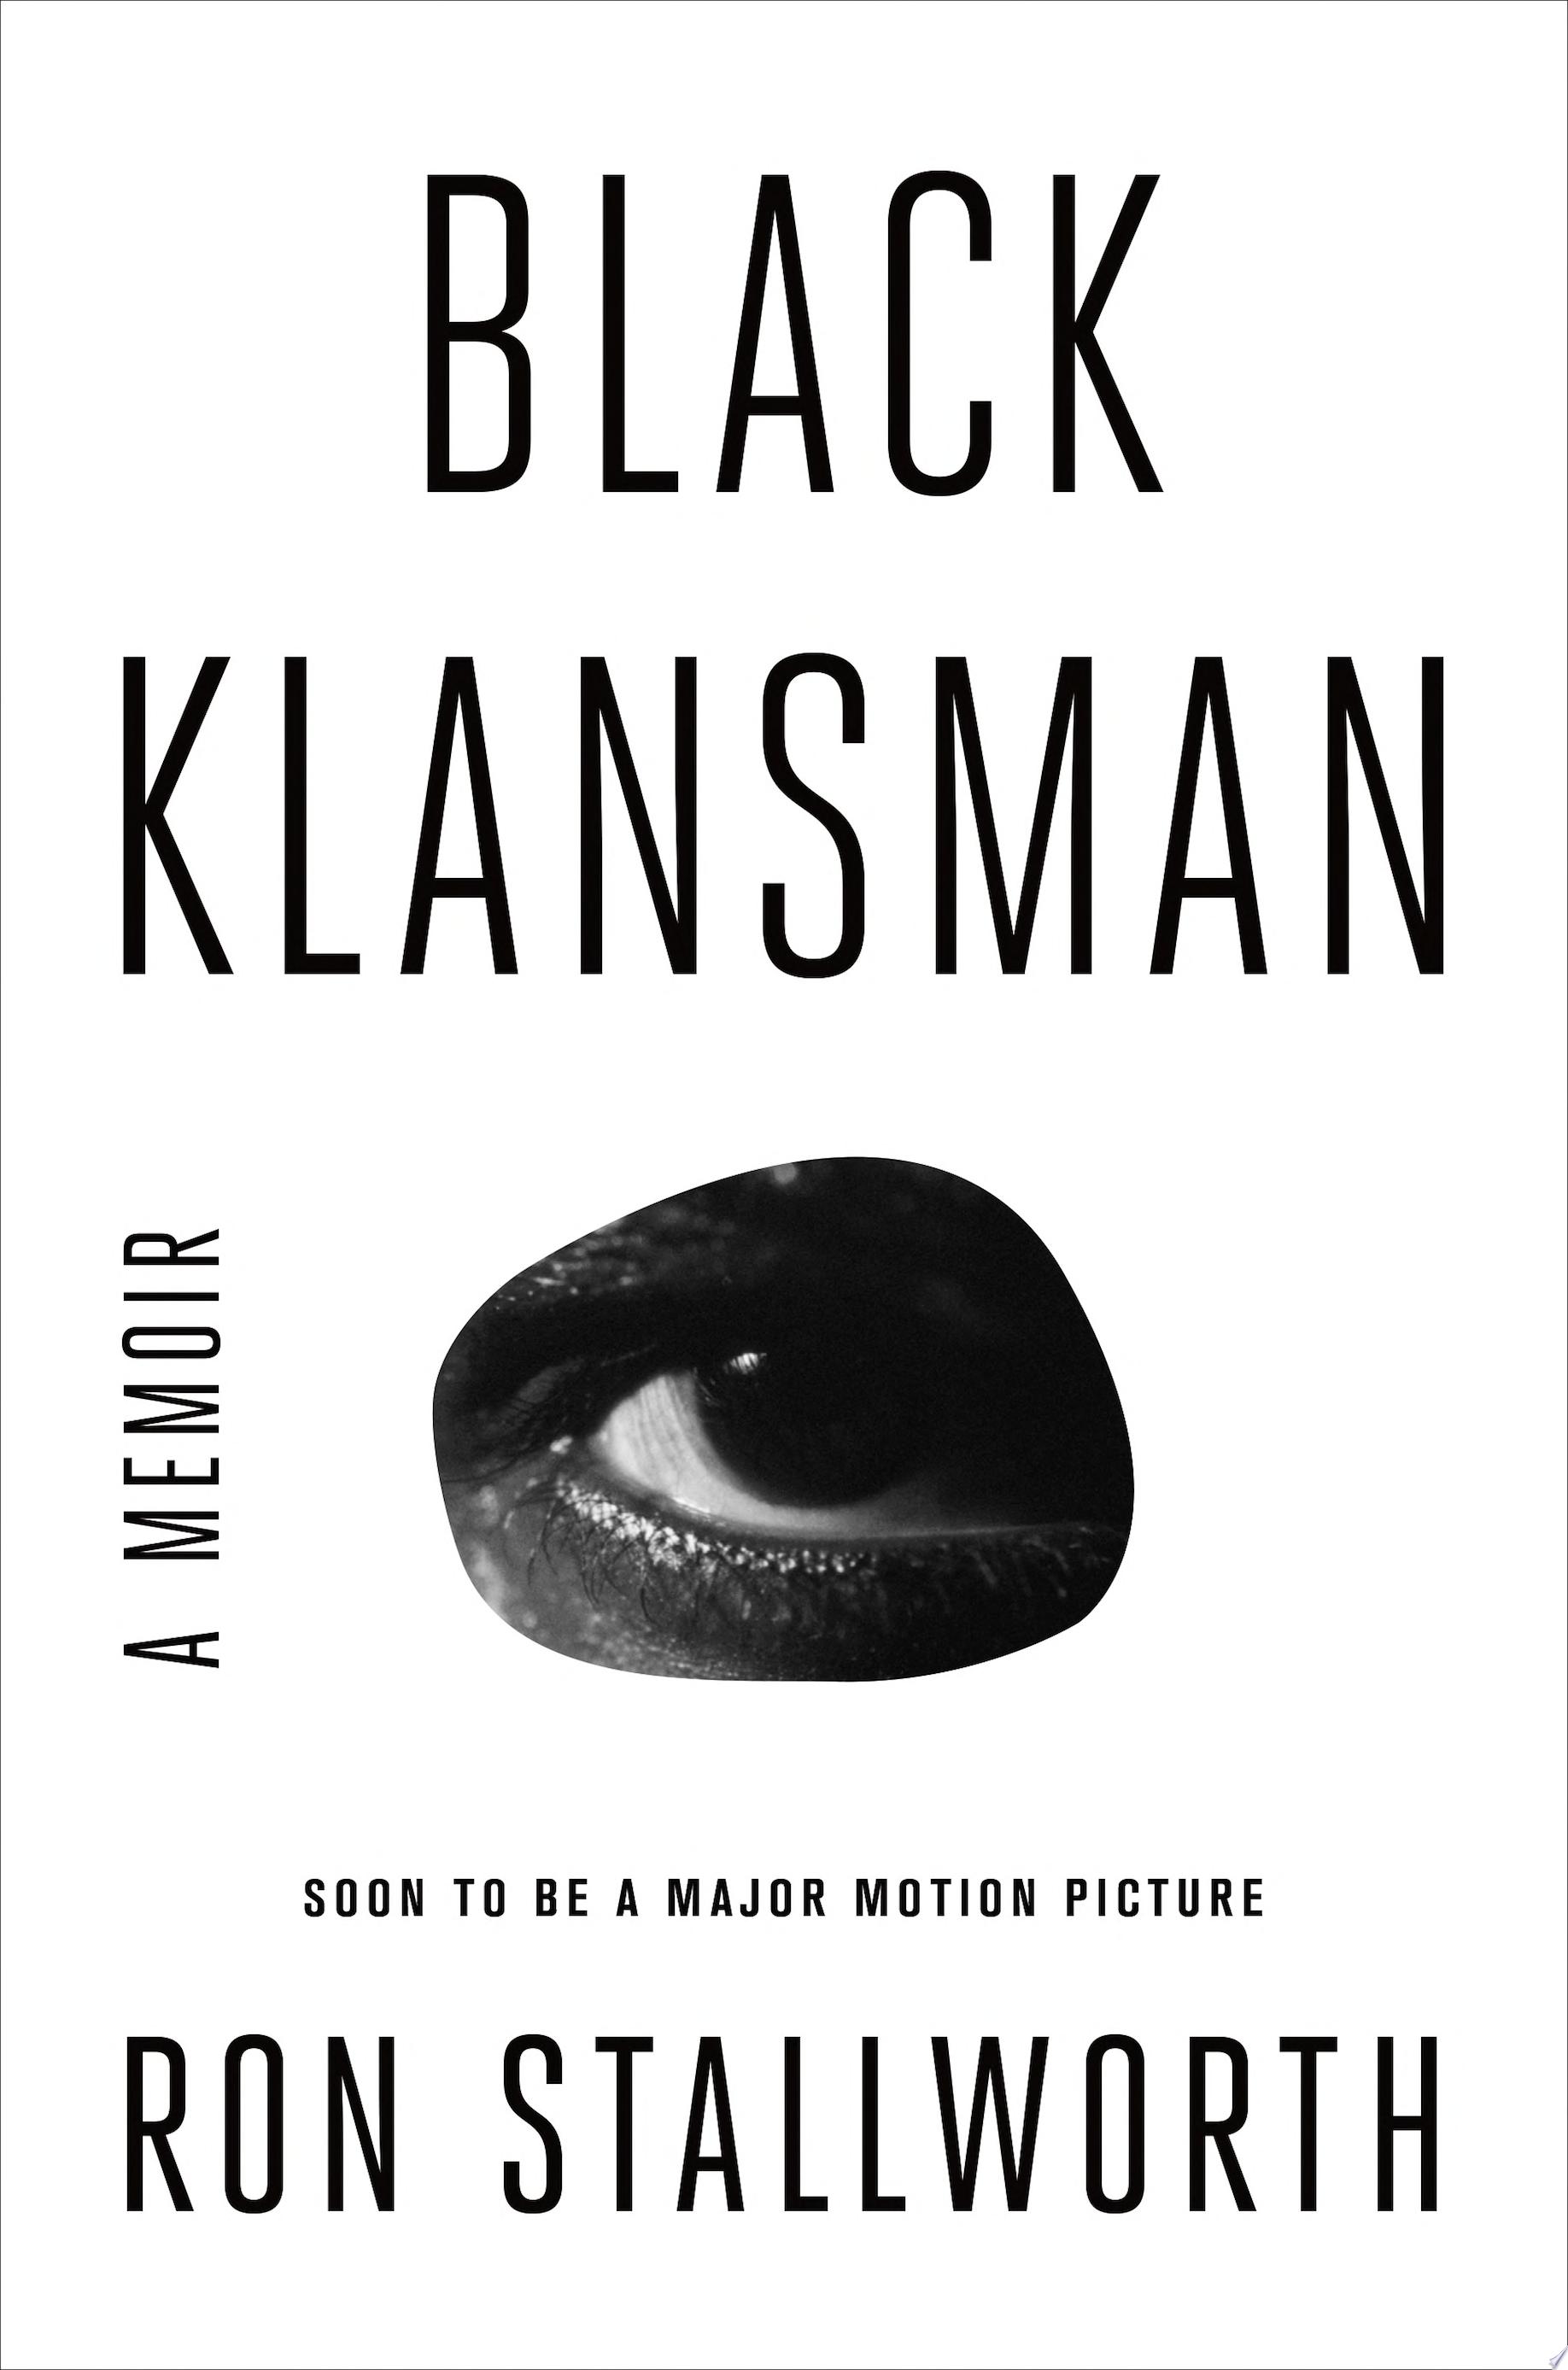 Image for "Black Klansman"